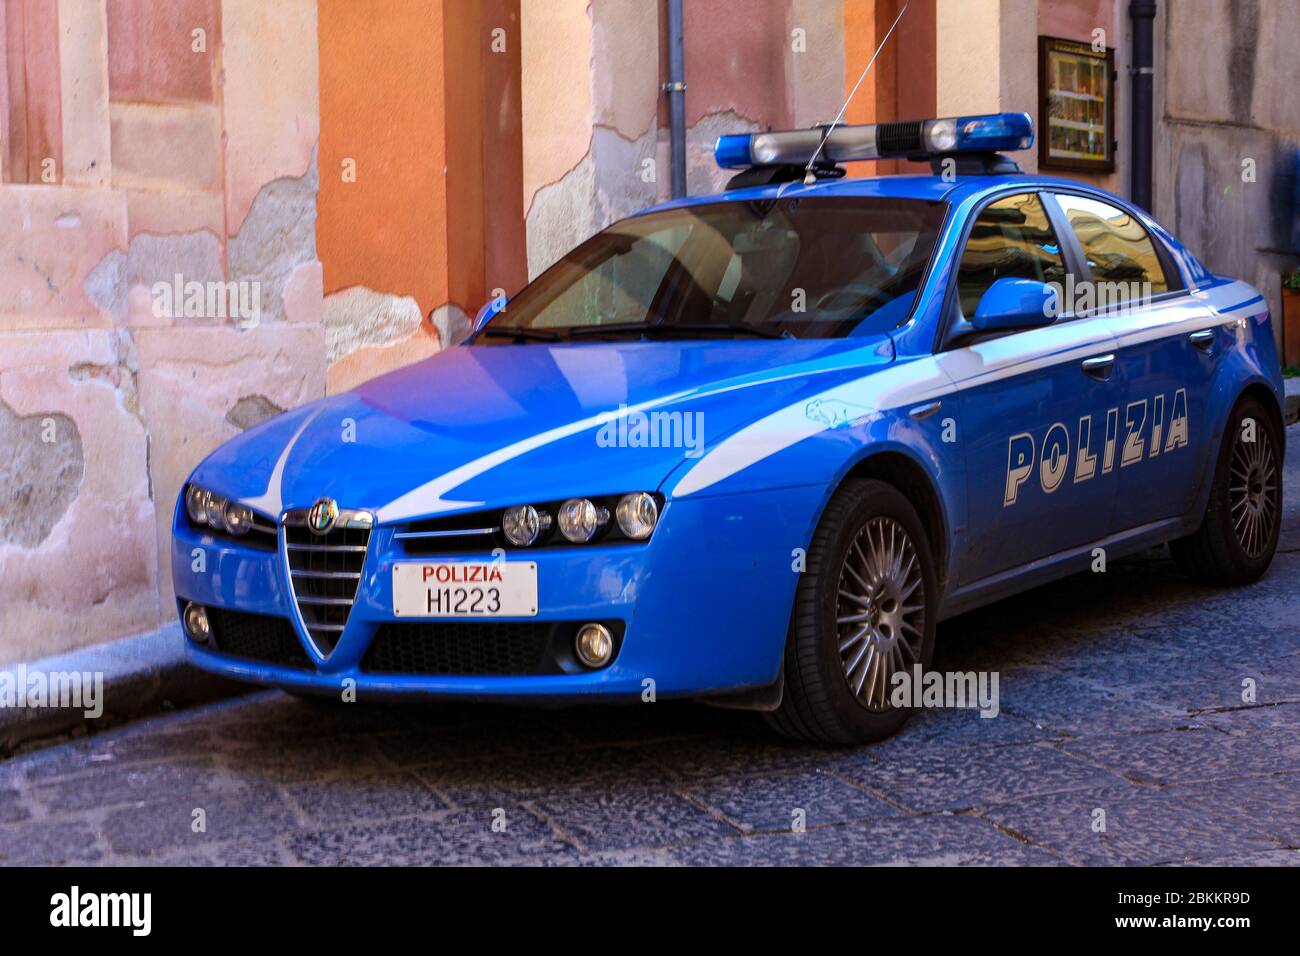 Alfa Romeo police car in Italy Stock Photo